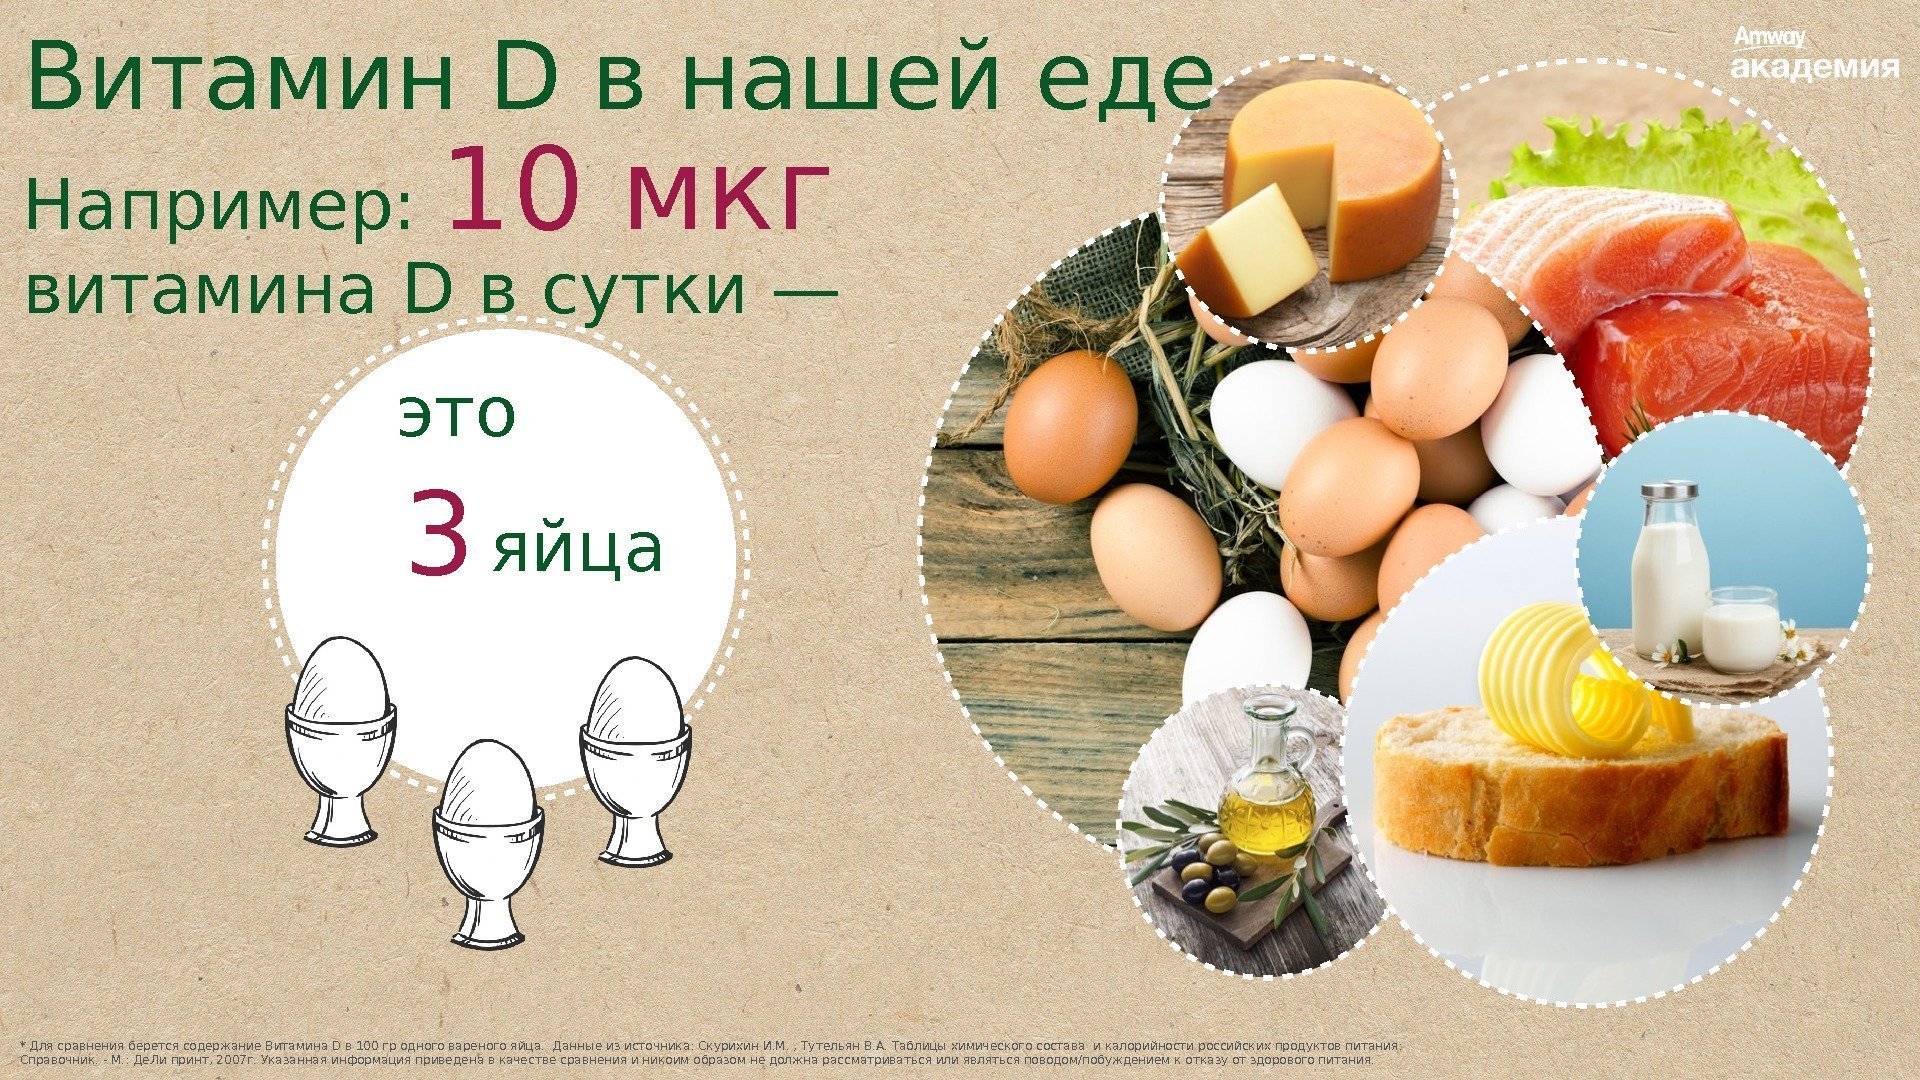 * Для сравнения берется содержание Витамина D в 100 гр одного вареного яйца. 